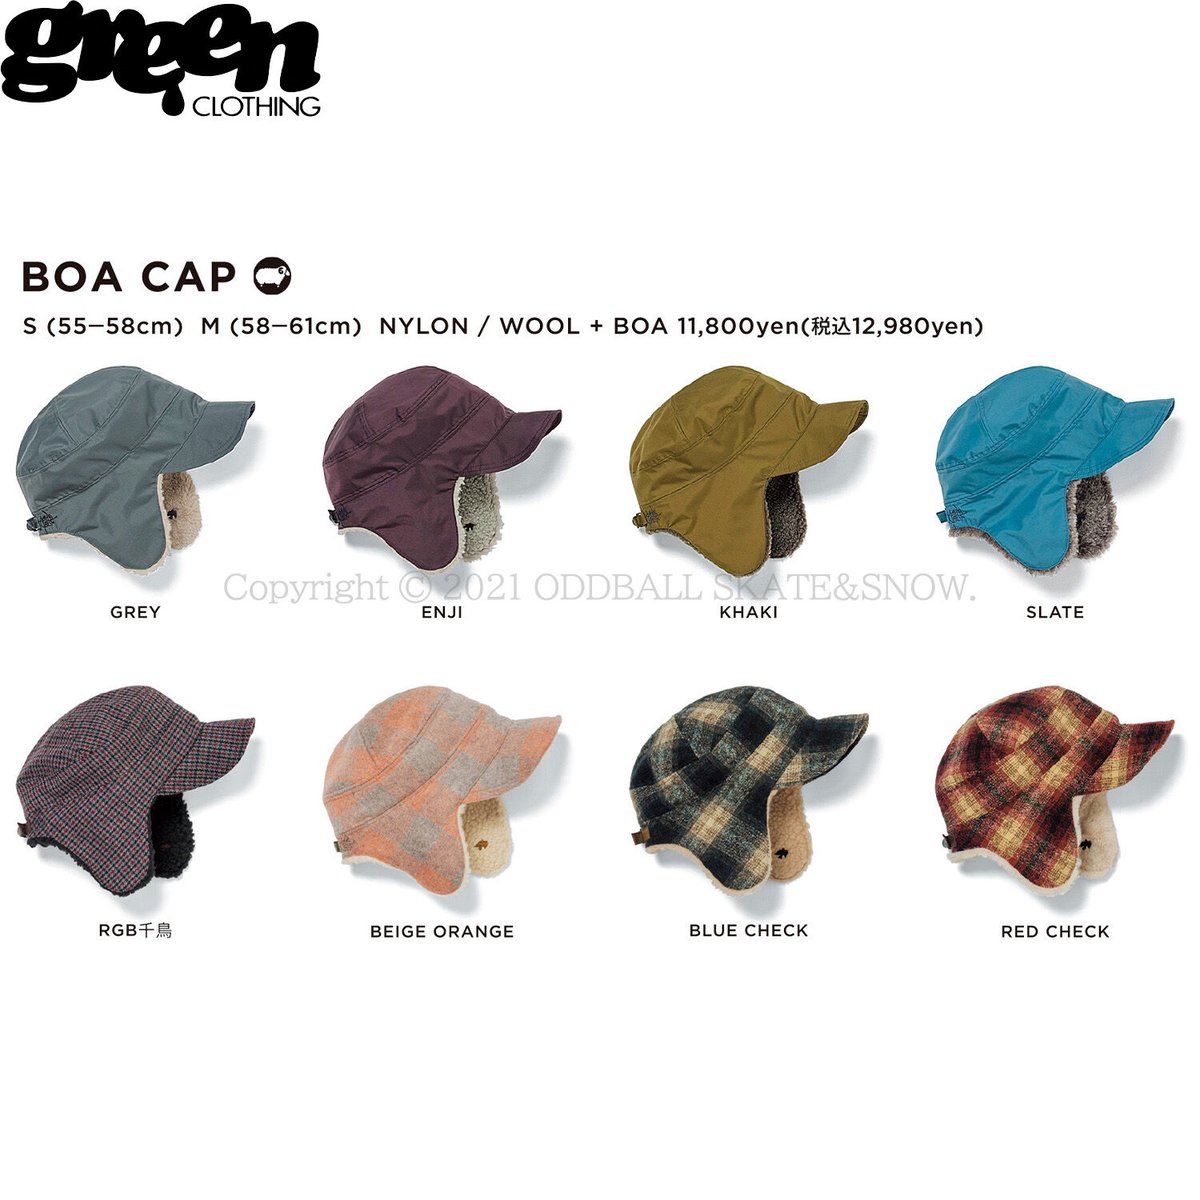 23-24 GREEN CLOTHING BOA CAP ODDBALL SKATESNOW